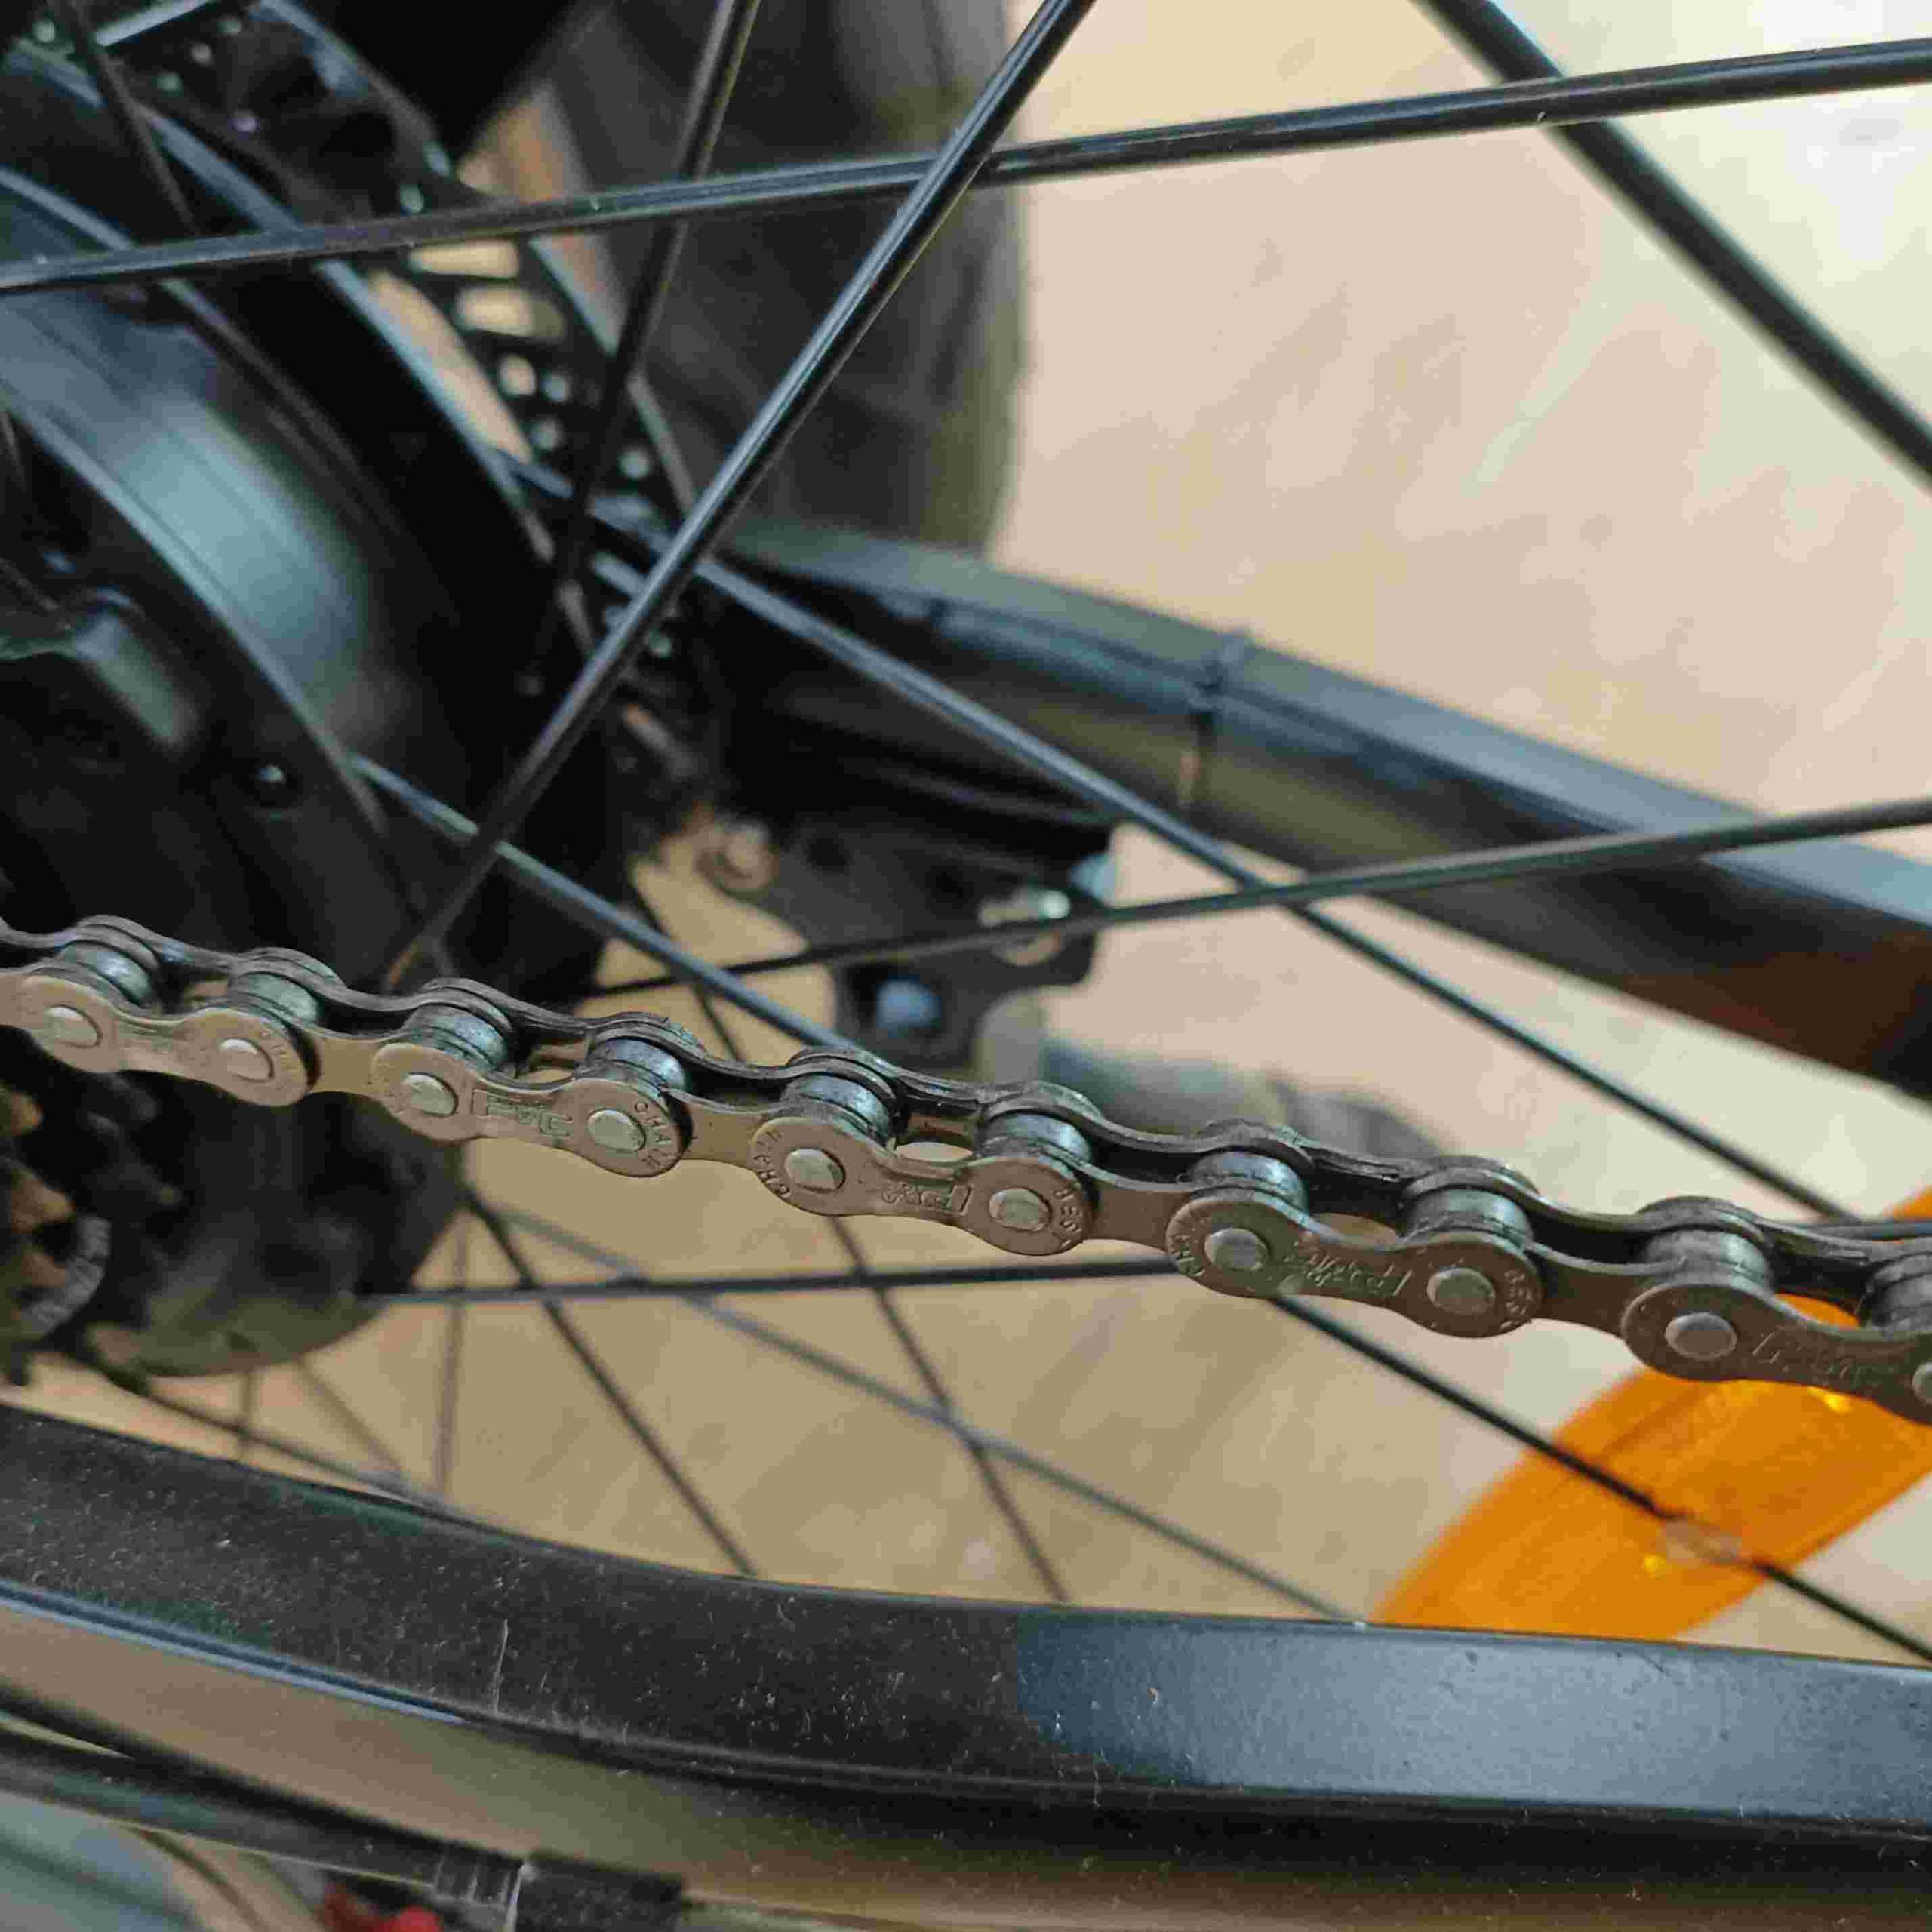 HOTEBIKE Chains for Cycles 7/8 Speed Chain for Mountain Bike RoadBike Bicycle Racing Bike Cycling - HOTEBIKE - 1